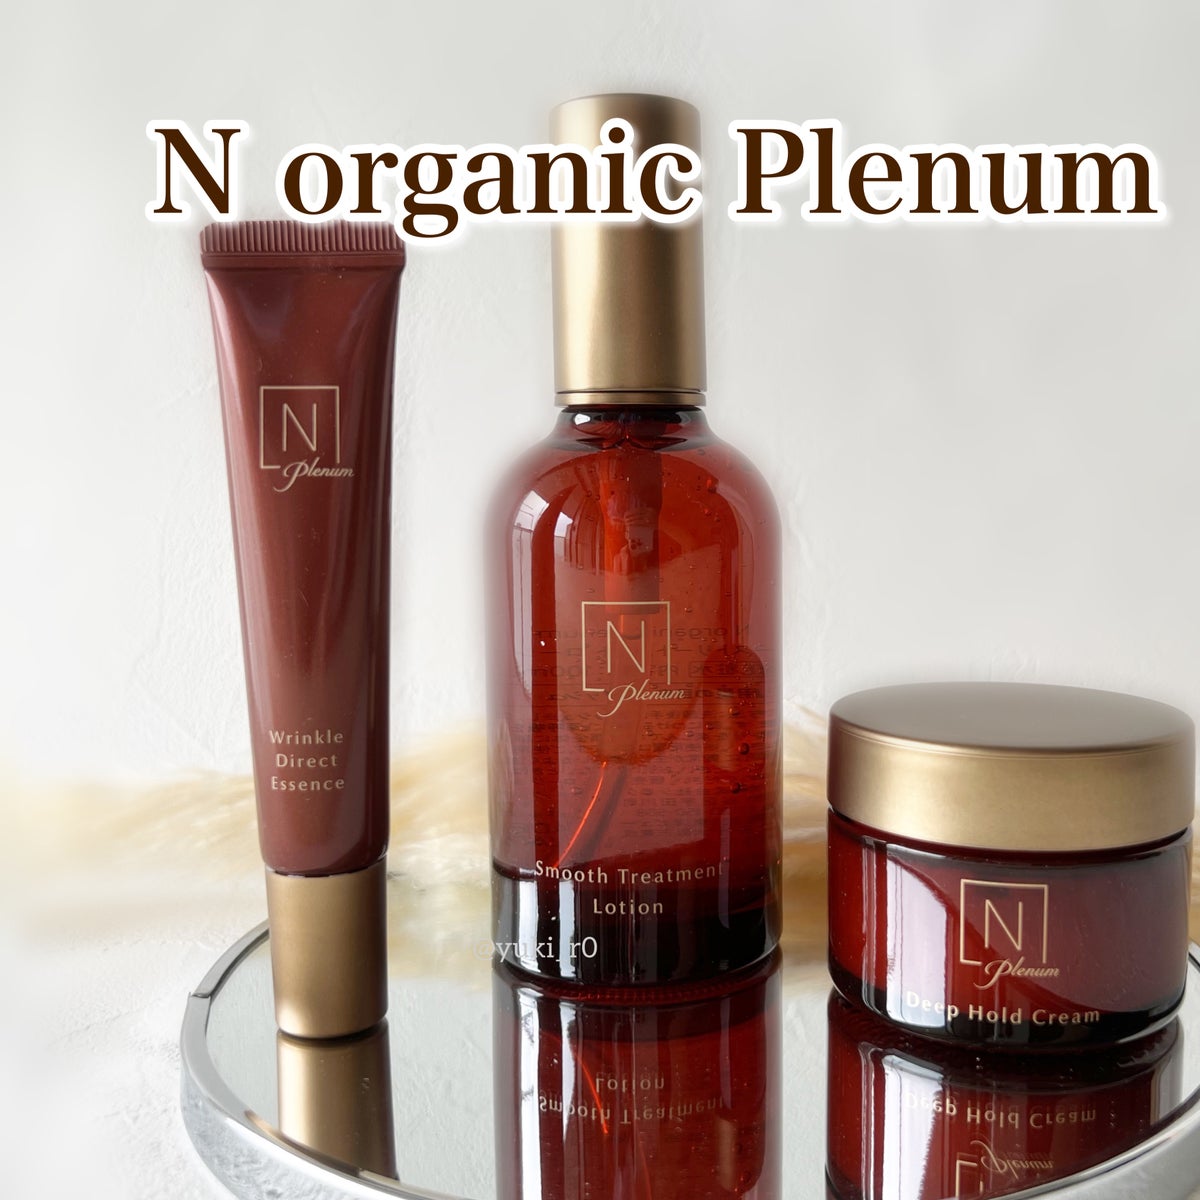 Ｎ organicのスキンケア・基礎化粧品を徹底比較】Plenum スムース